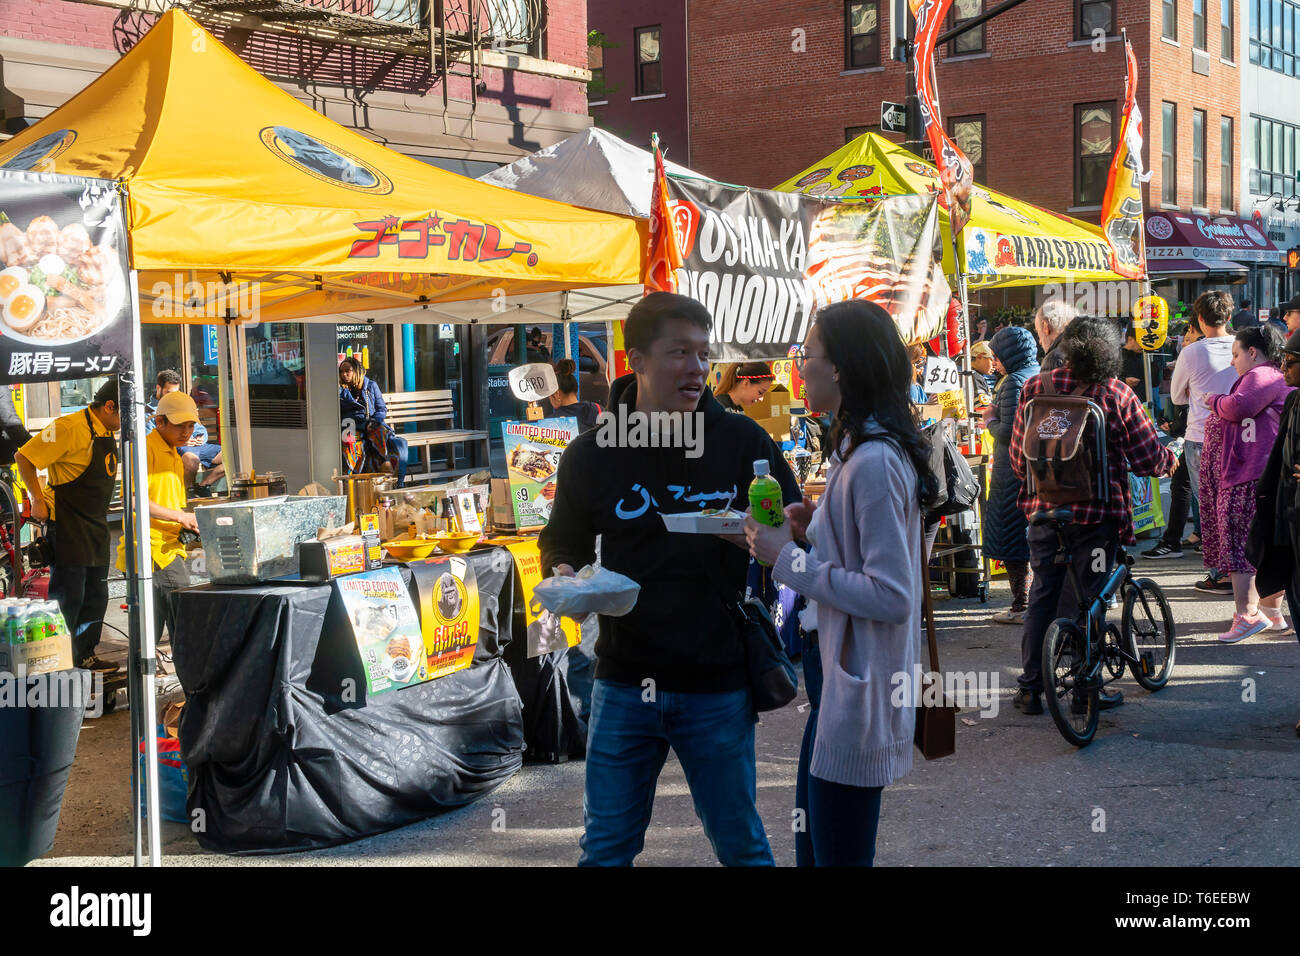 Les amateurs de profiter d'aliments de rue japonais lors d'une foire de rue dans le quartier de Chelsea, New York sur une chaude Samedi 27 Avril, 2019. (Â© Richard B. Levine) Banque D'Images